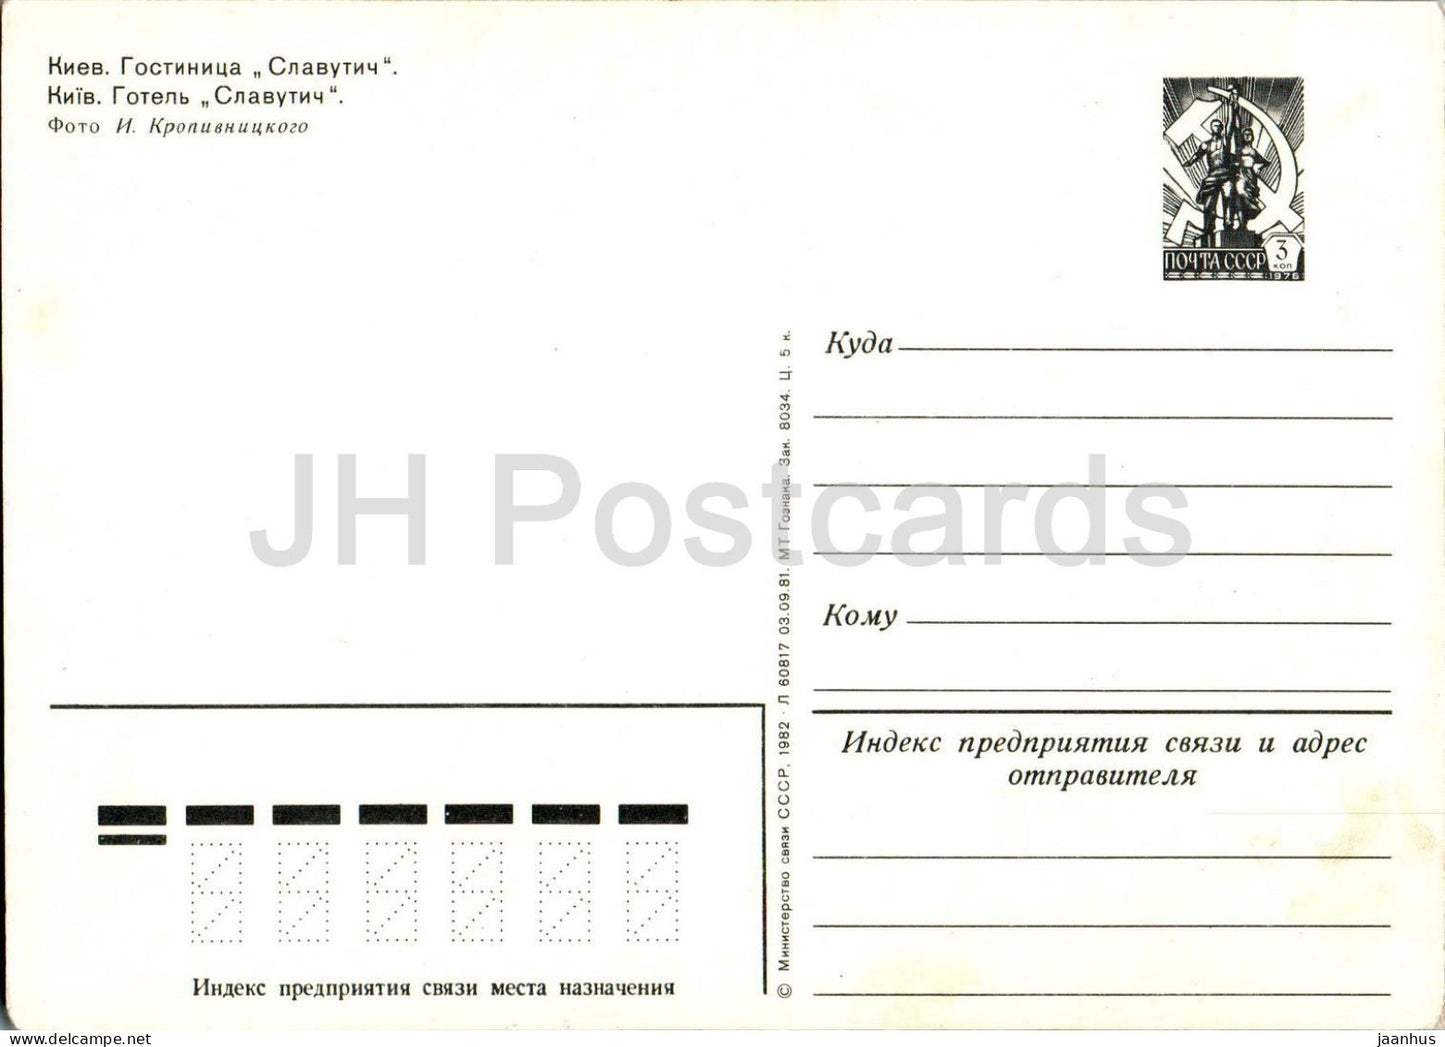 Kyiv - Kiev - hotel Slavutych - bridge - bus Ikarus - postal stationery - 1982 - Ukraine USSR - unused